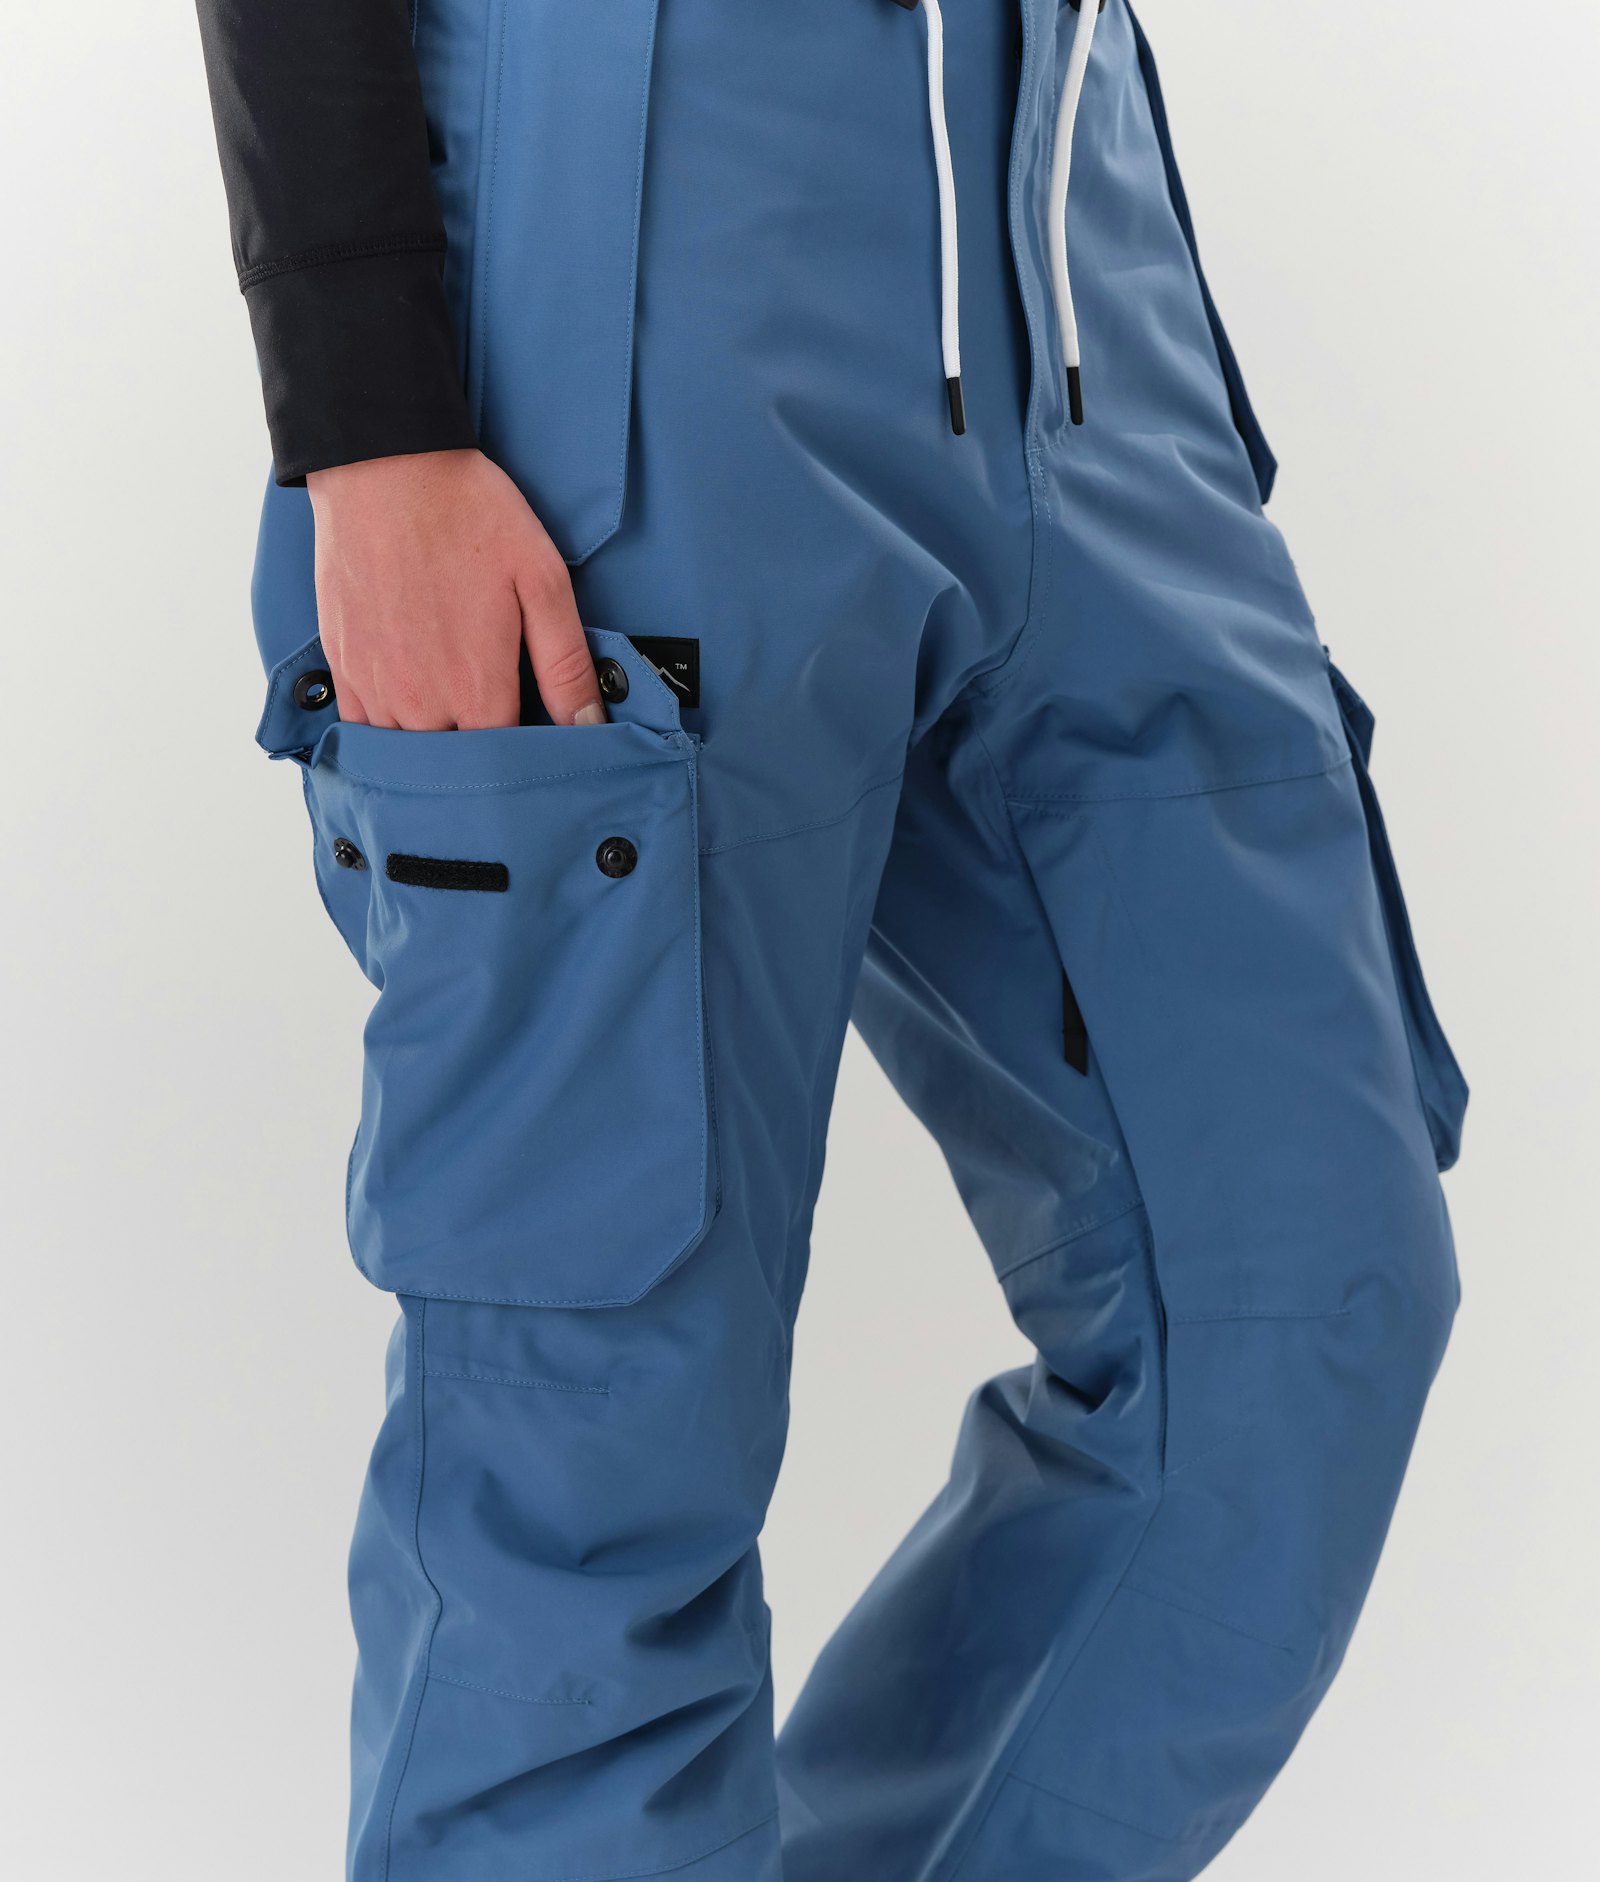 Iconic W 2020 Lyžařské Kalhoty Dámské Blue Steel